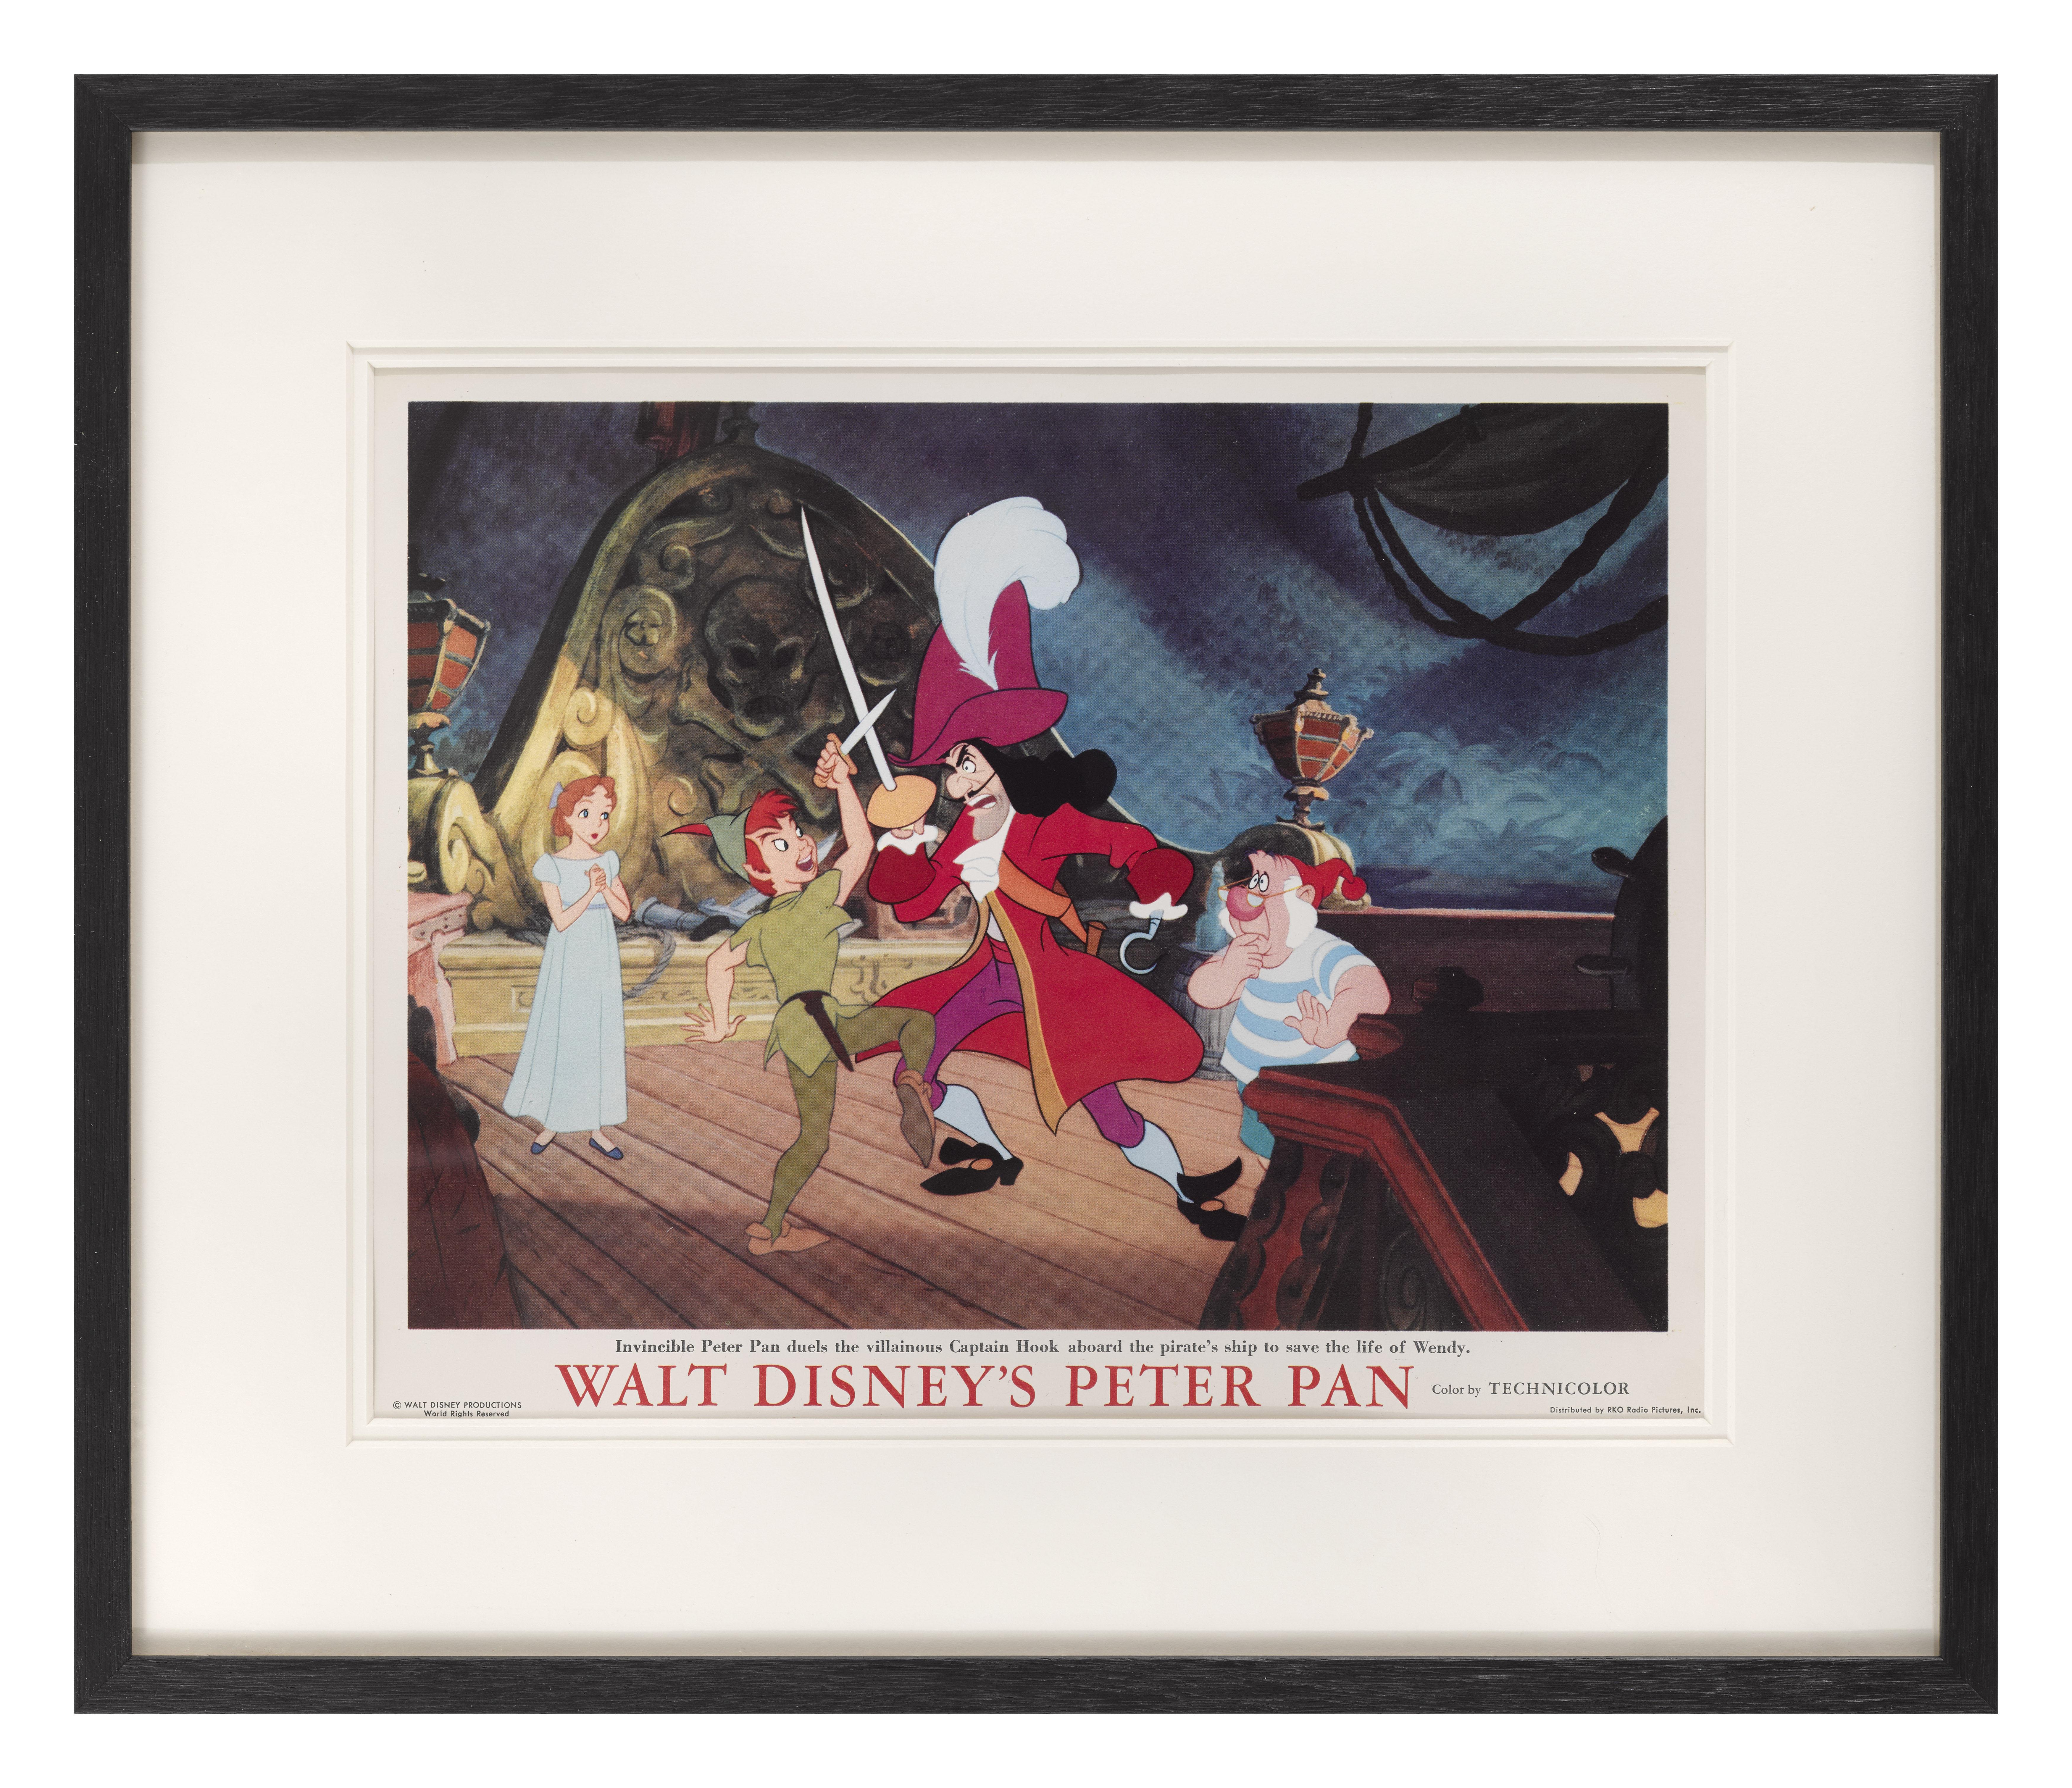 Carte de visite originale américaine pour Peter Pan  L'animation Disney de 1953.
Cette pièce aurait été utilisée pour annoncer le film à l'intérieur du foyer du cinéma. 
Ce film de Walt Disney est basé sur la pièce de théâtre Peter Pan, ou le garçon